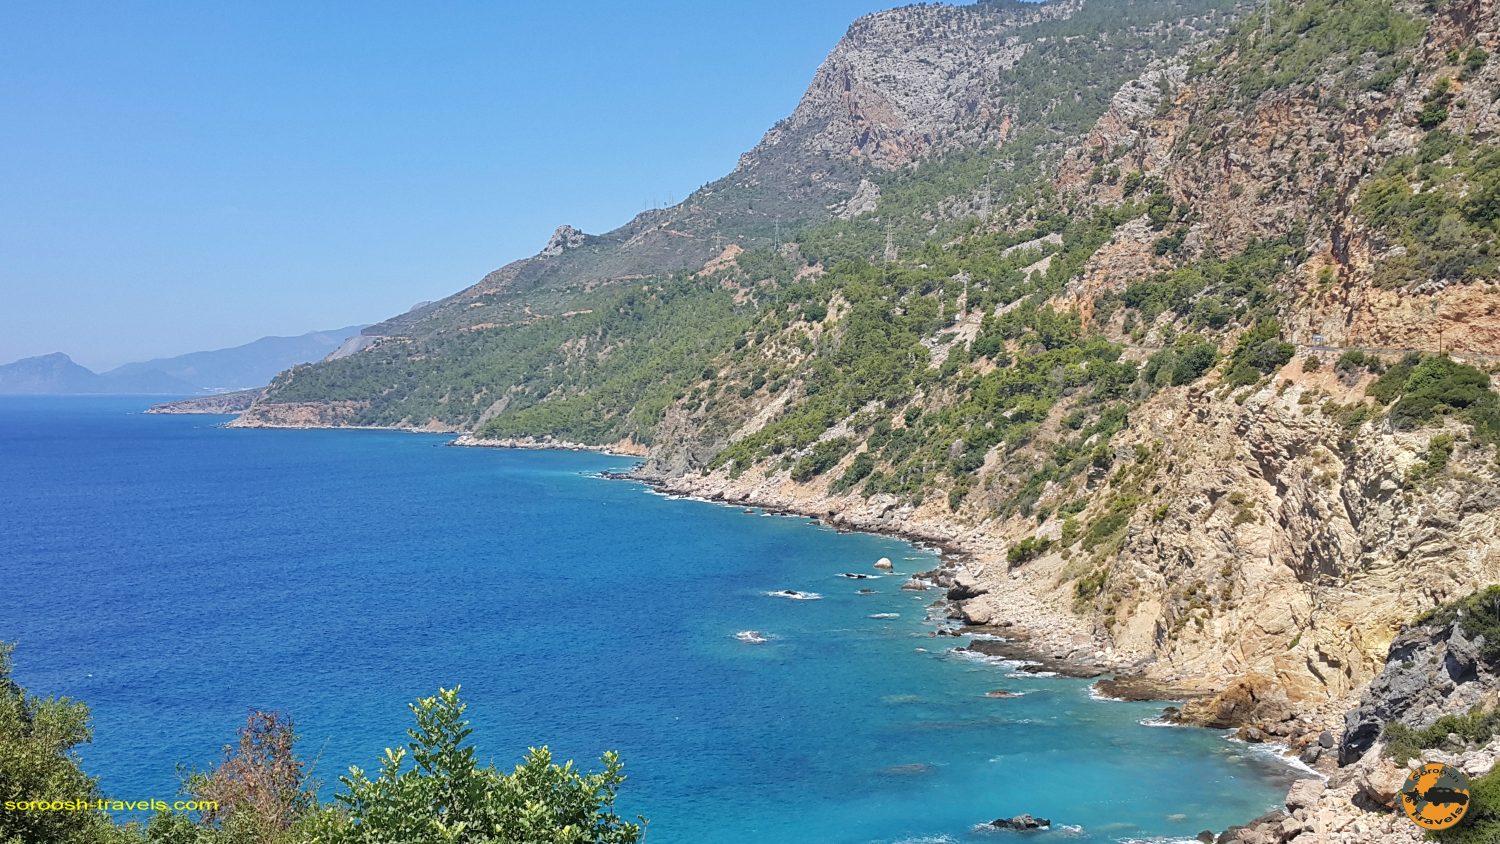 سواحل مدیترانه - جنوب ترکیه - تابستان 1398 2019